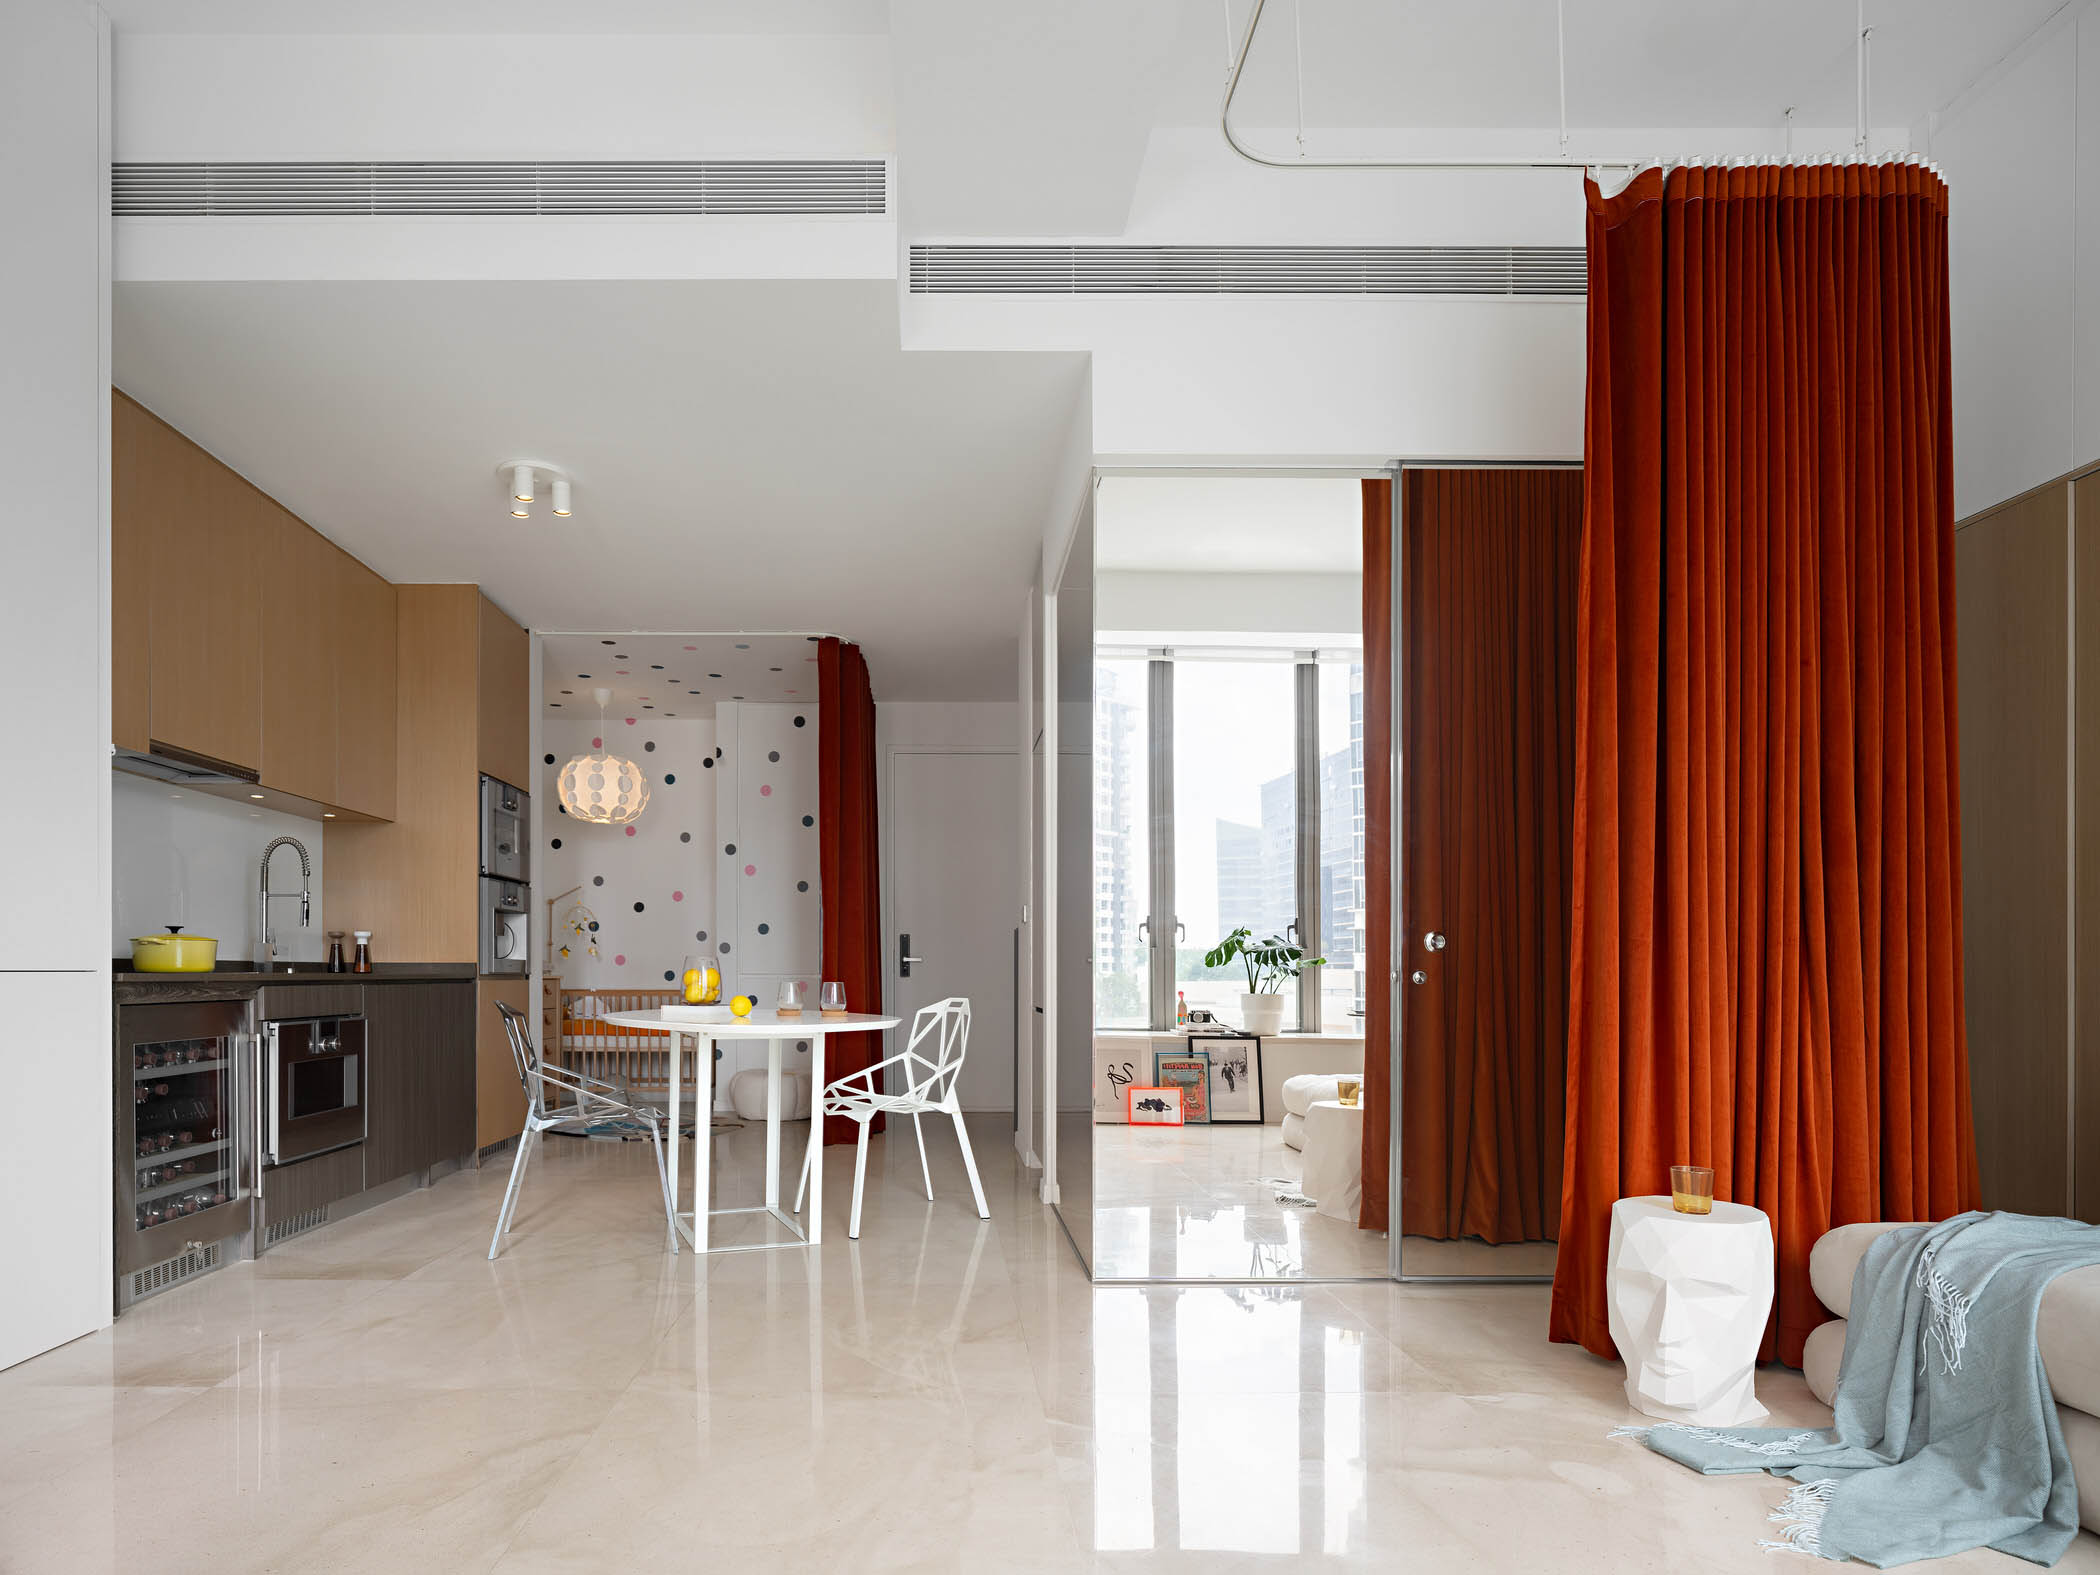 Design Pair,公寓设计案例,公寓设计方案,小户型设计,新加坡,公寓设计,SOHO